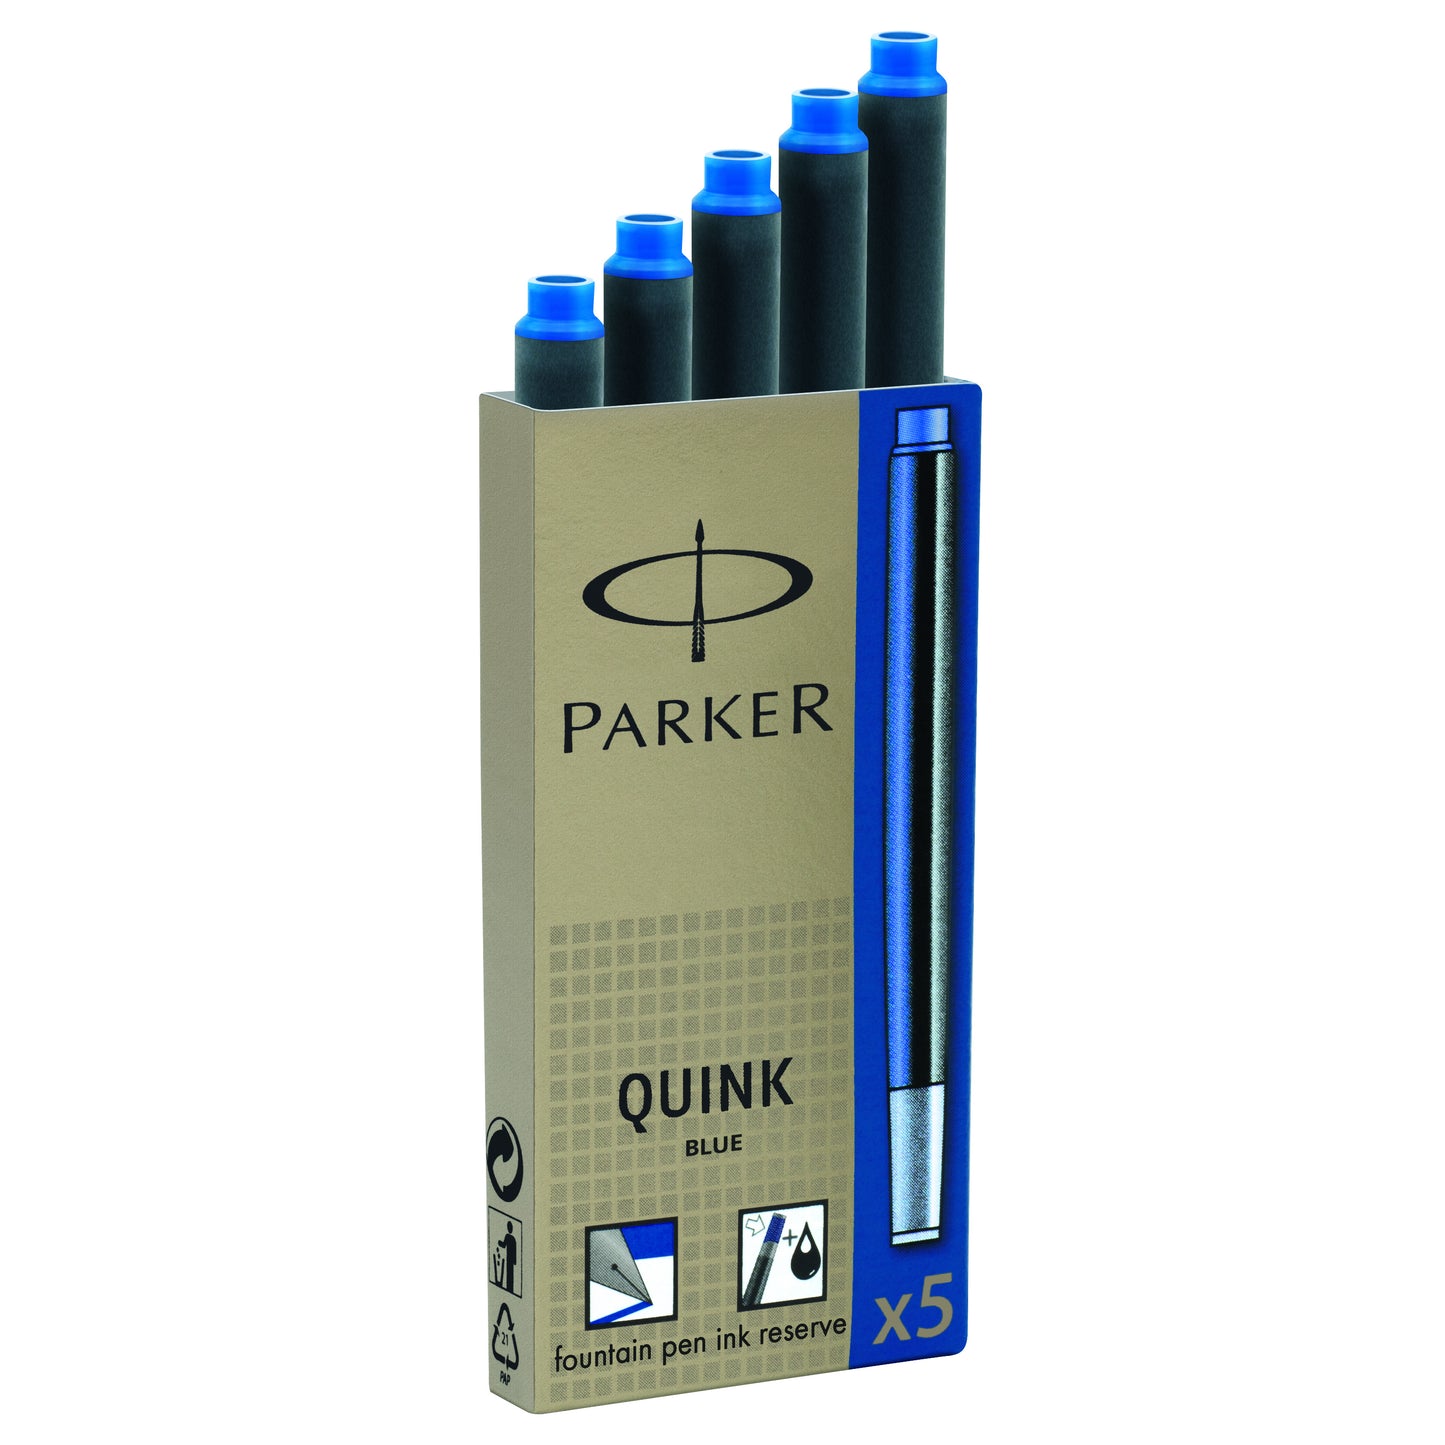 Parker Quink Ink Cart Blue (5) S0881580 pack of 12